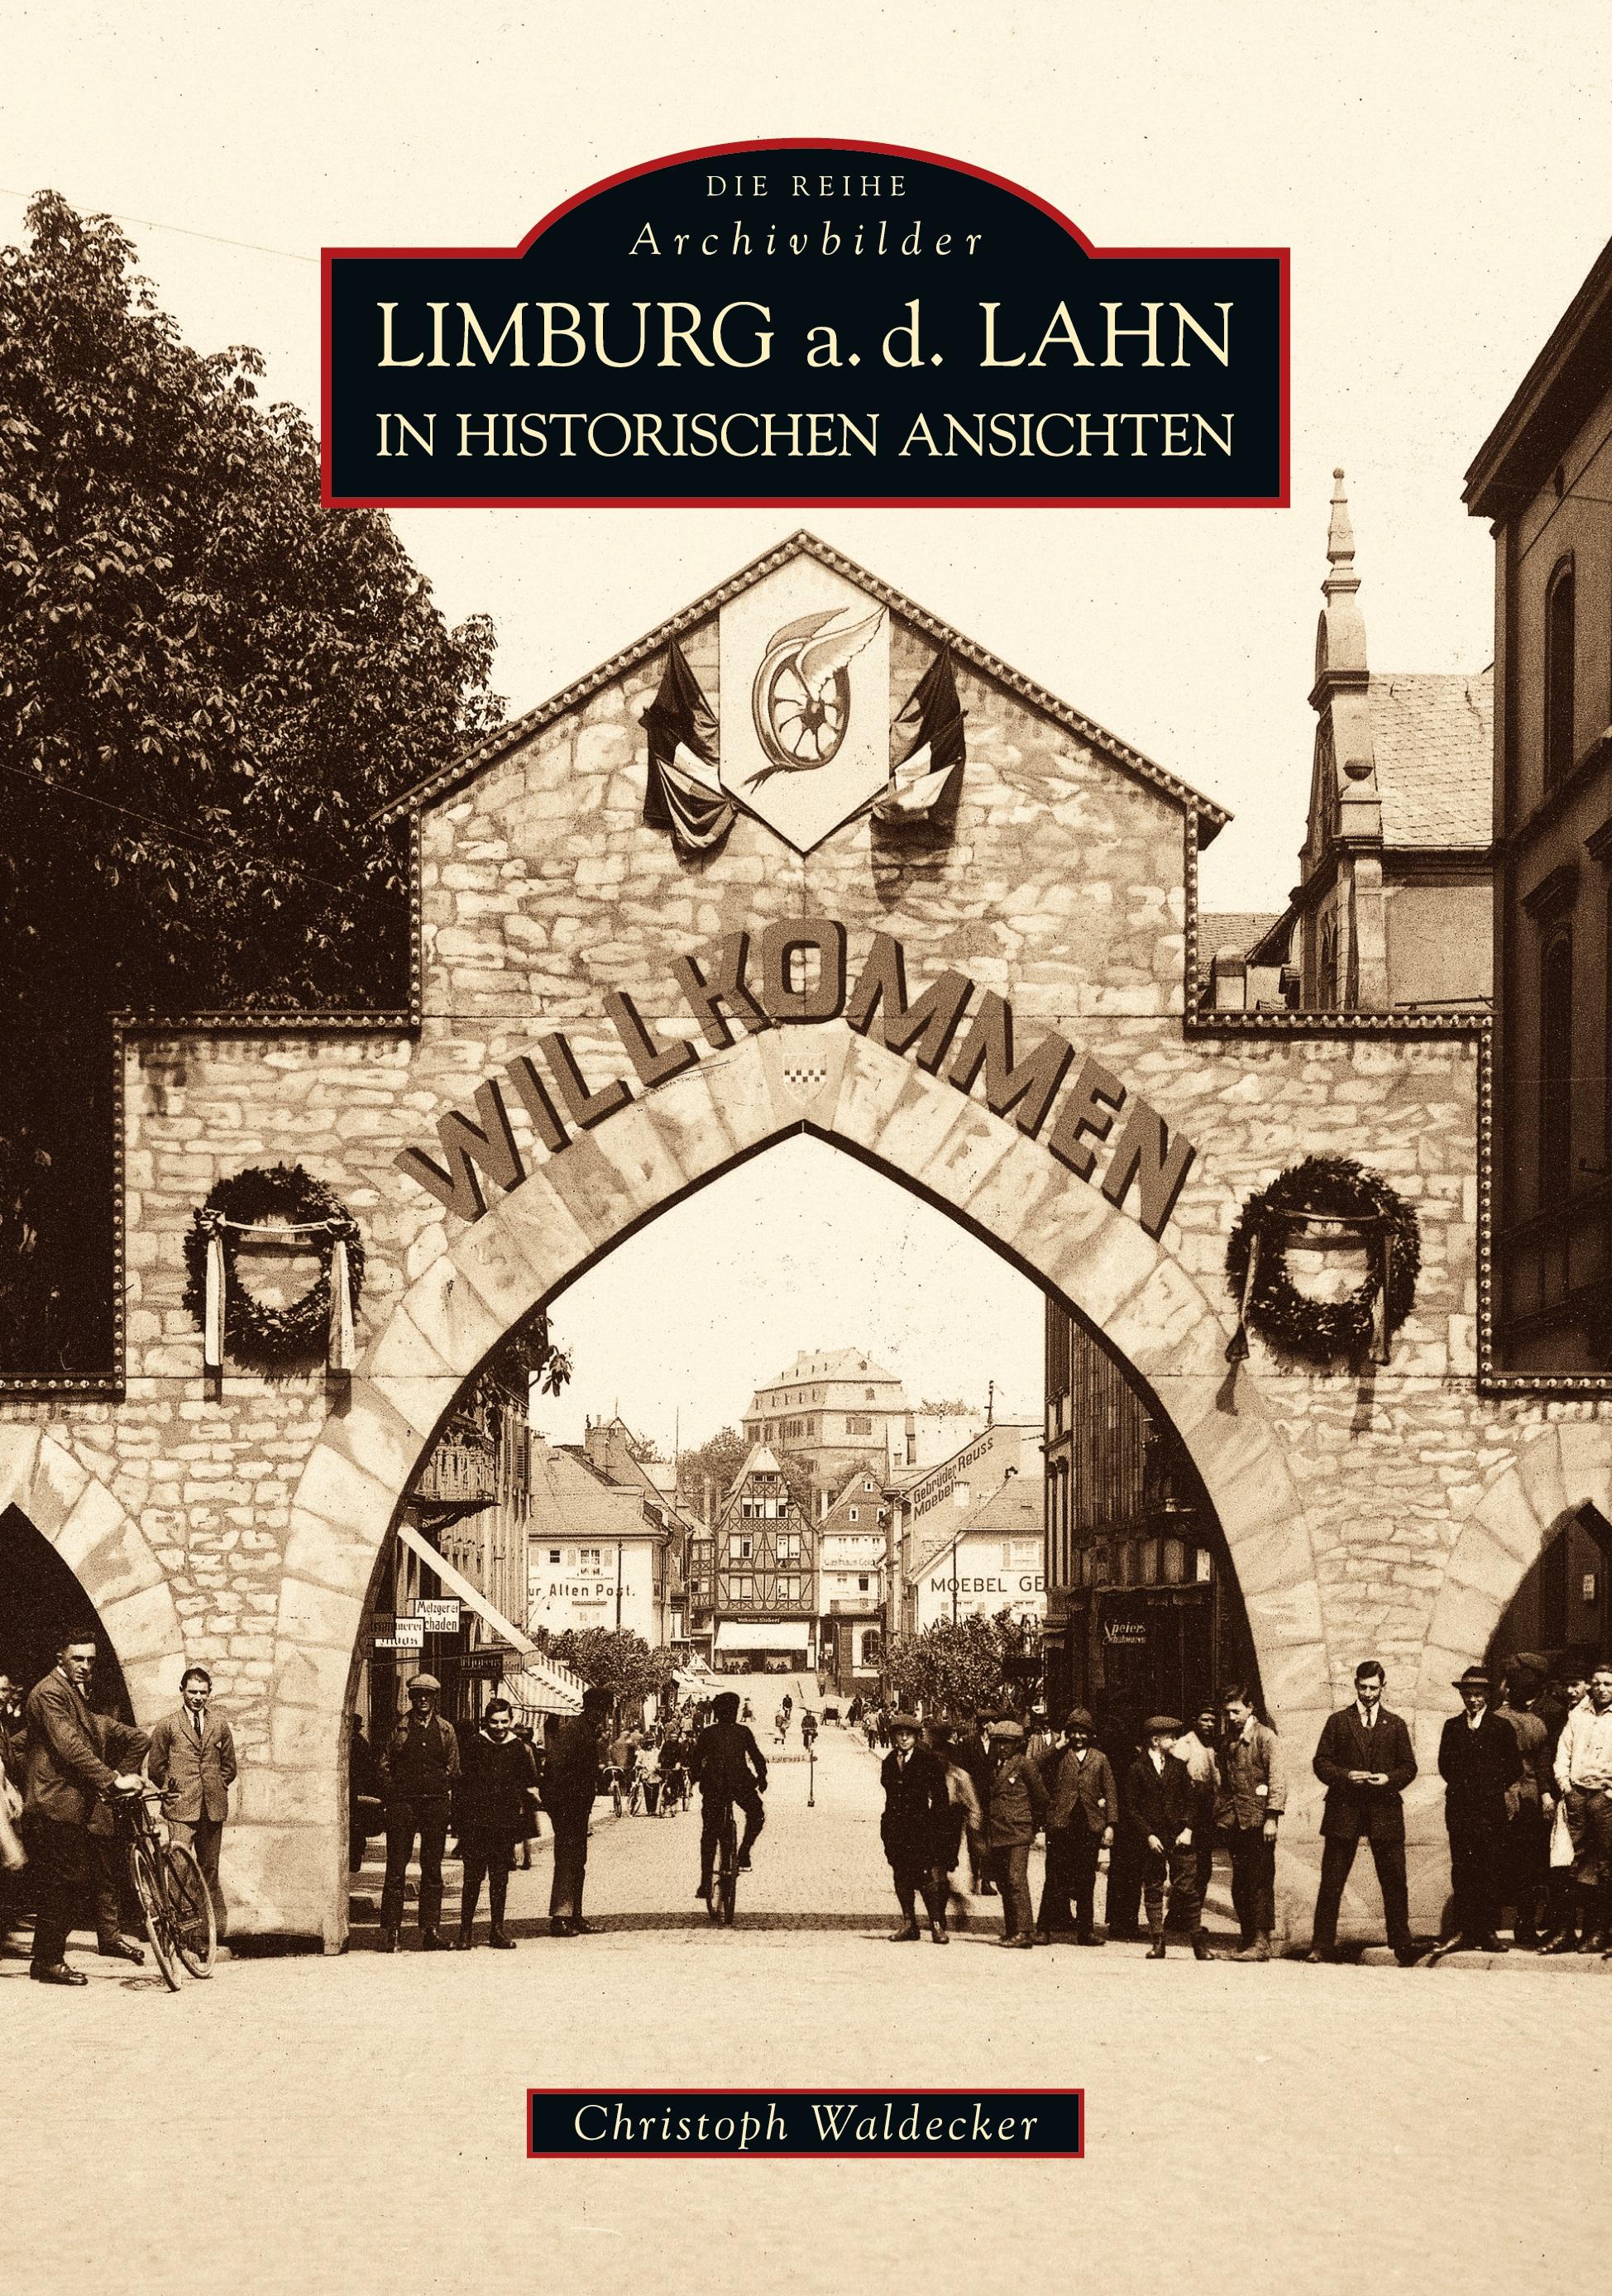 Limburg a.d. Lahn in alten Ansichten - Christoph Waldecker